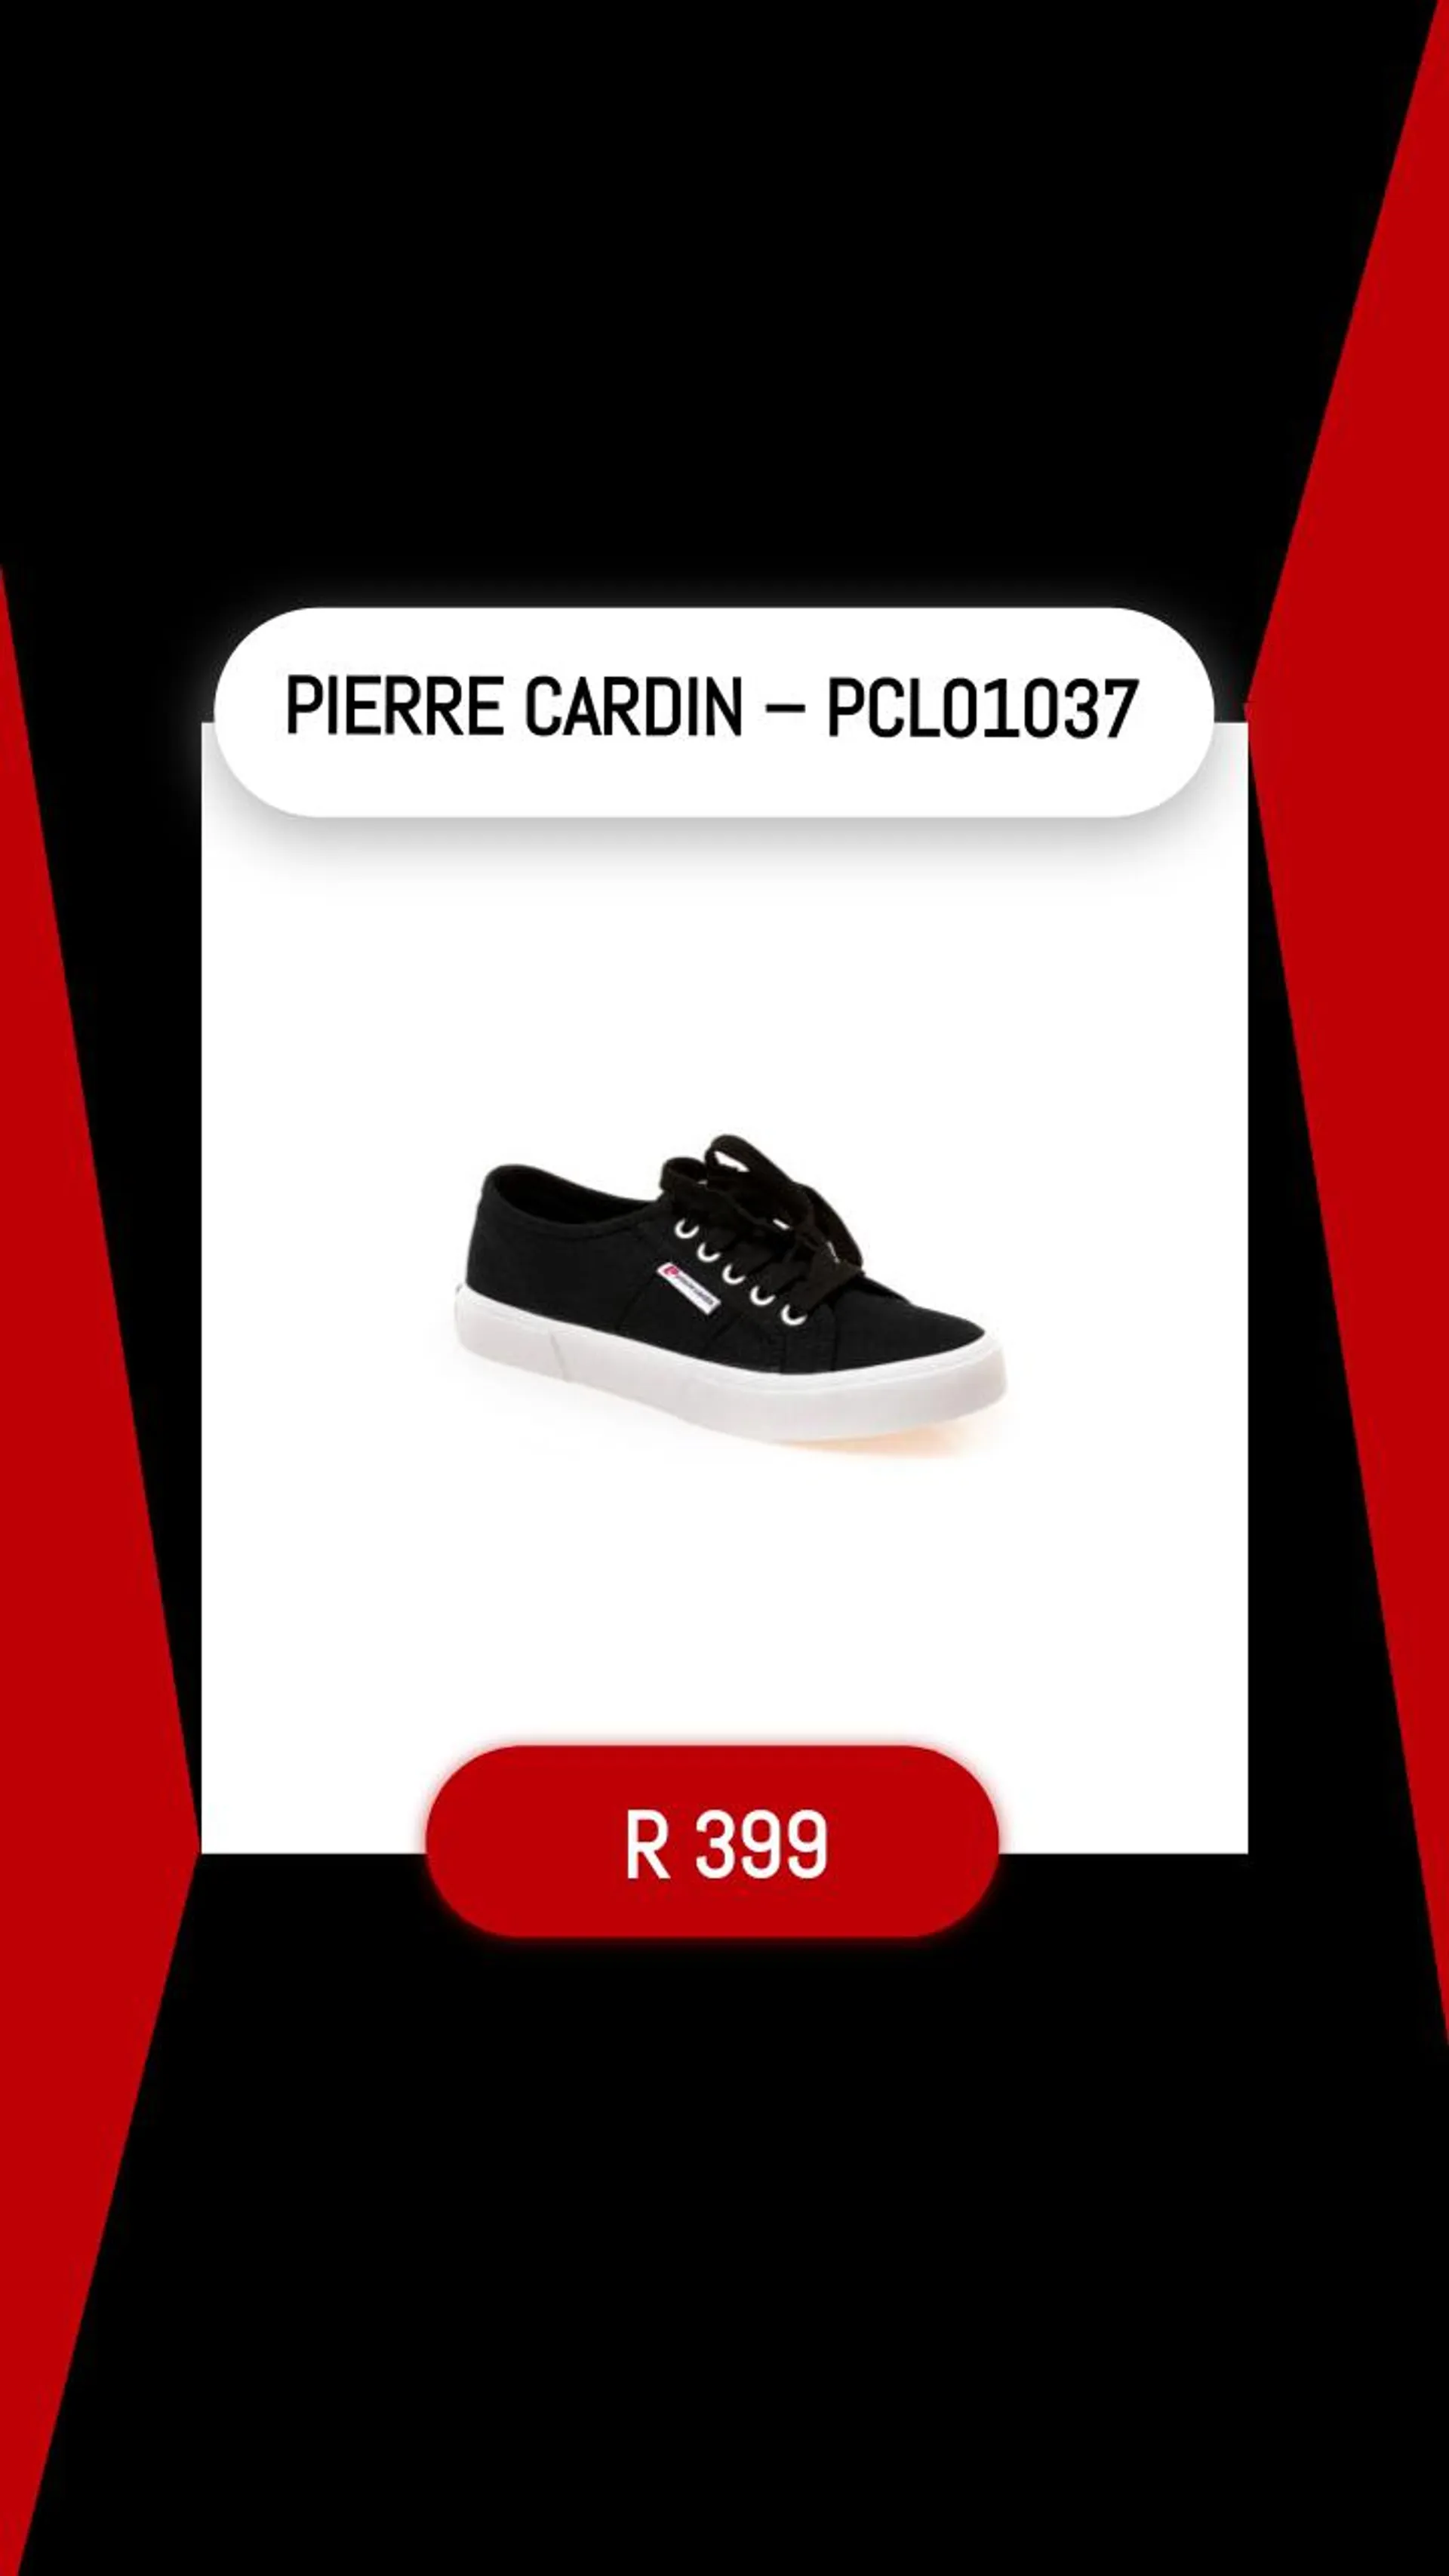 PIERRE CARDIN – PCL01037